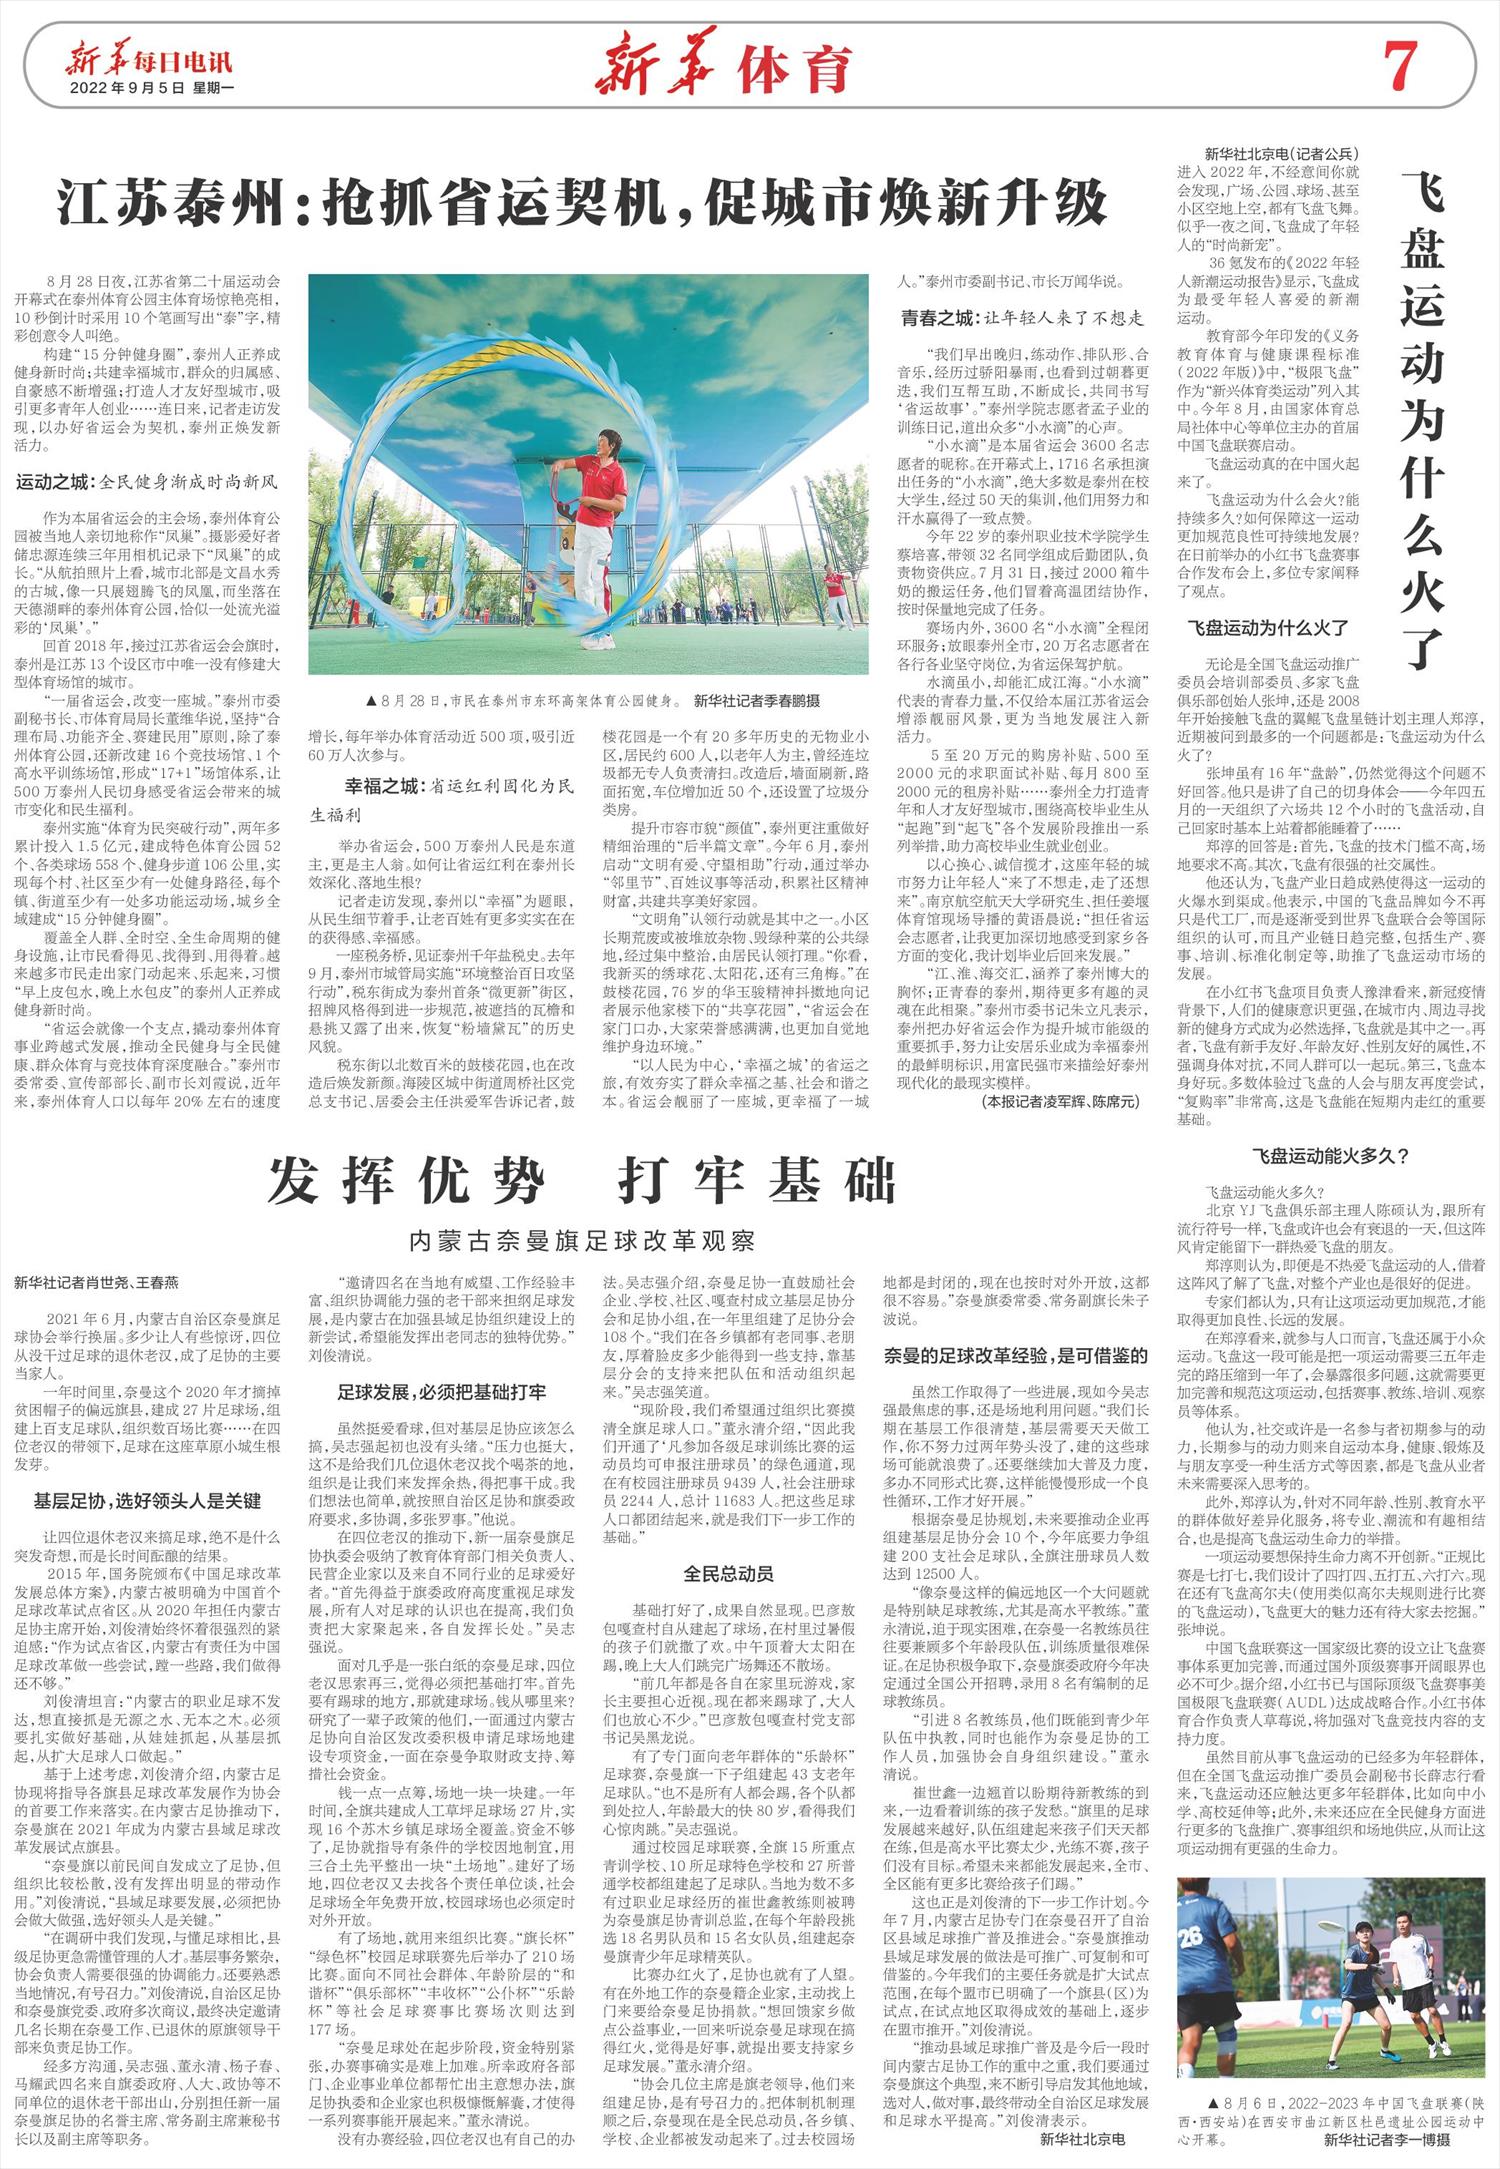 新华每日电讯-微报纸-2022年09月05日 image